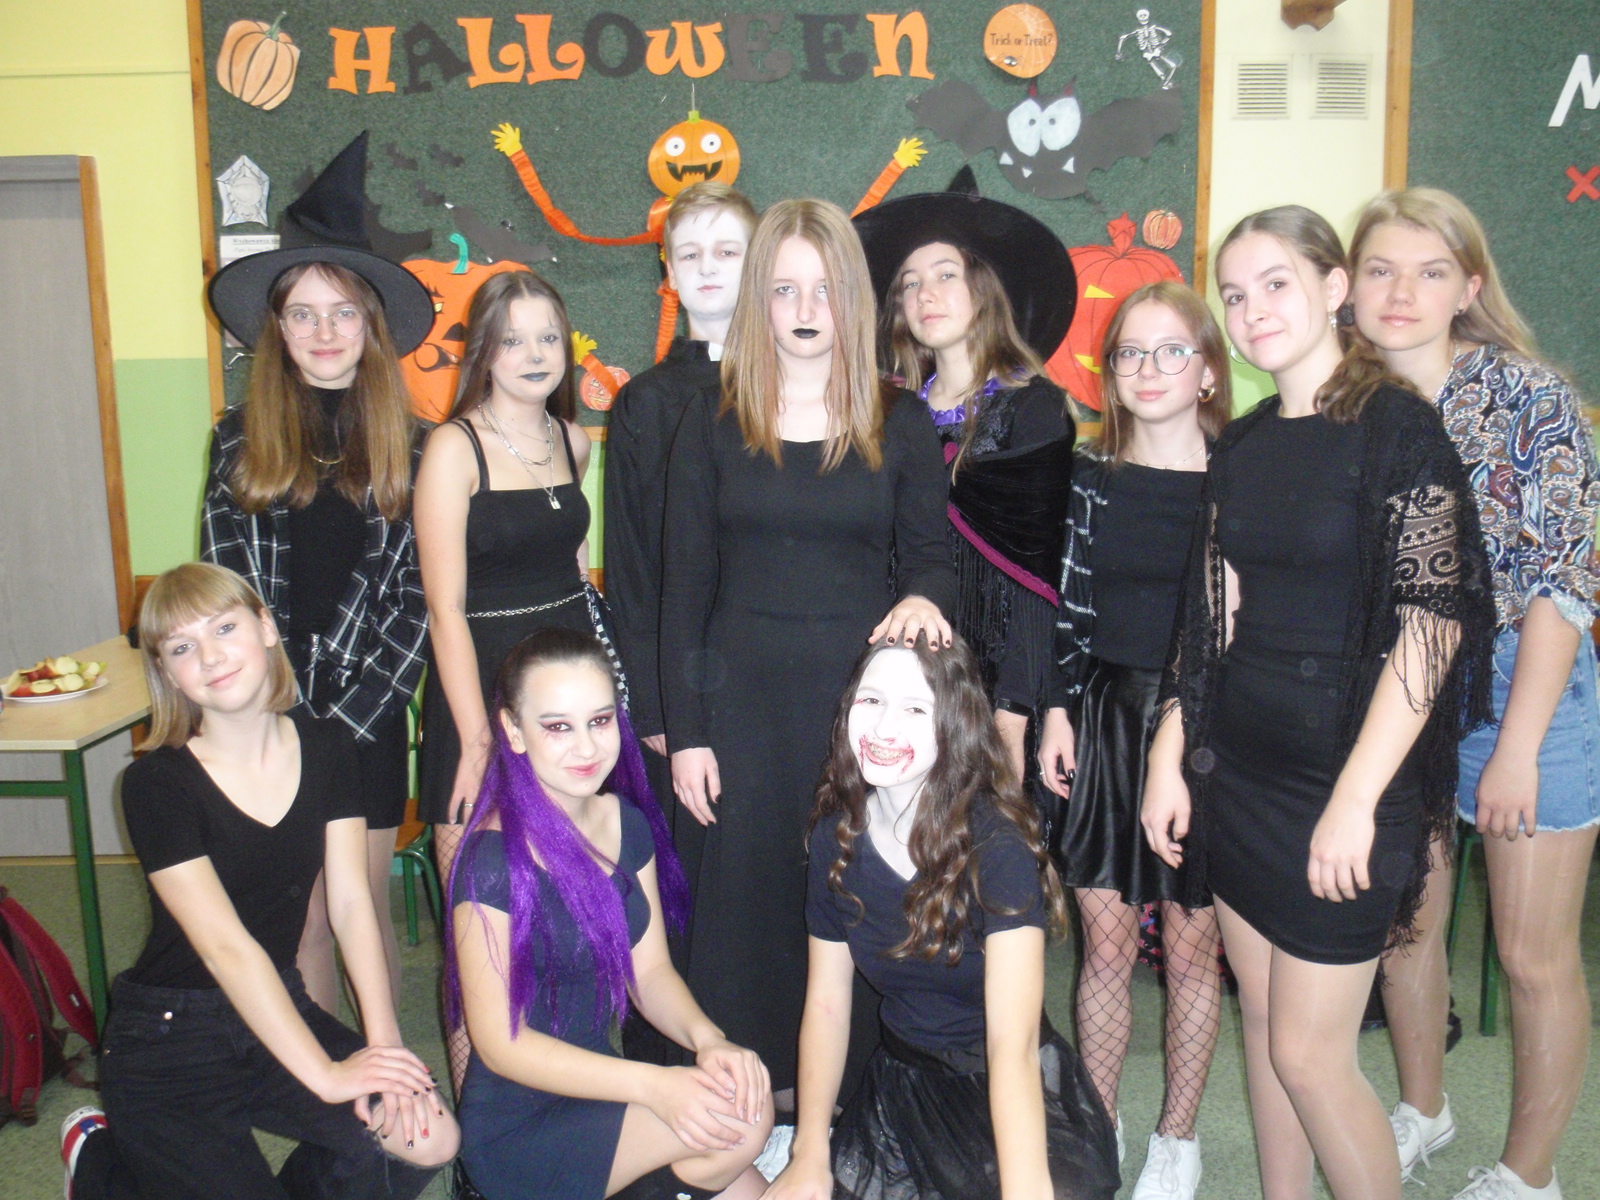 W tle widać gazetkę z okazji Halloween, stoi grupa dziewczynek z jednym chłopcem .Wszyscy ubrani w czarne stroje, 3 dziewczynki mają makijaż na twarzach, Jedna przyczepione fioletowe włosy.